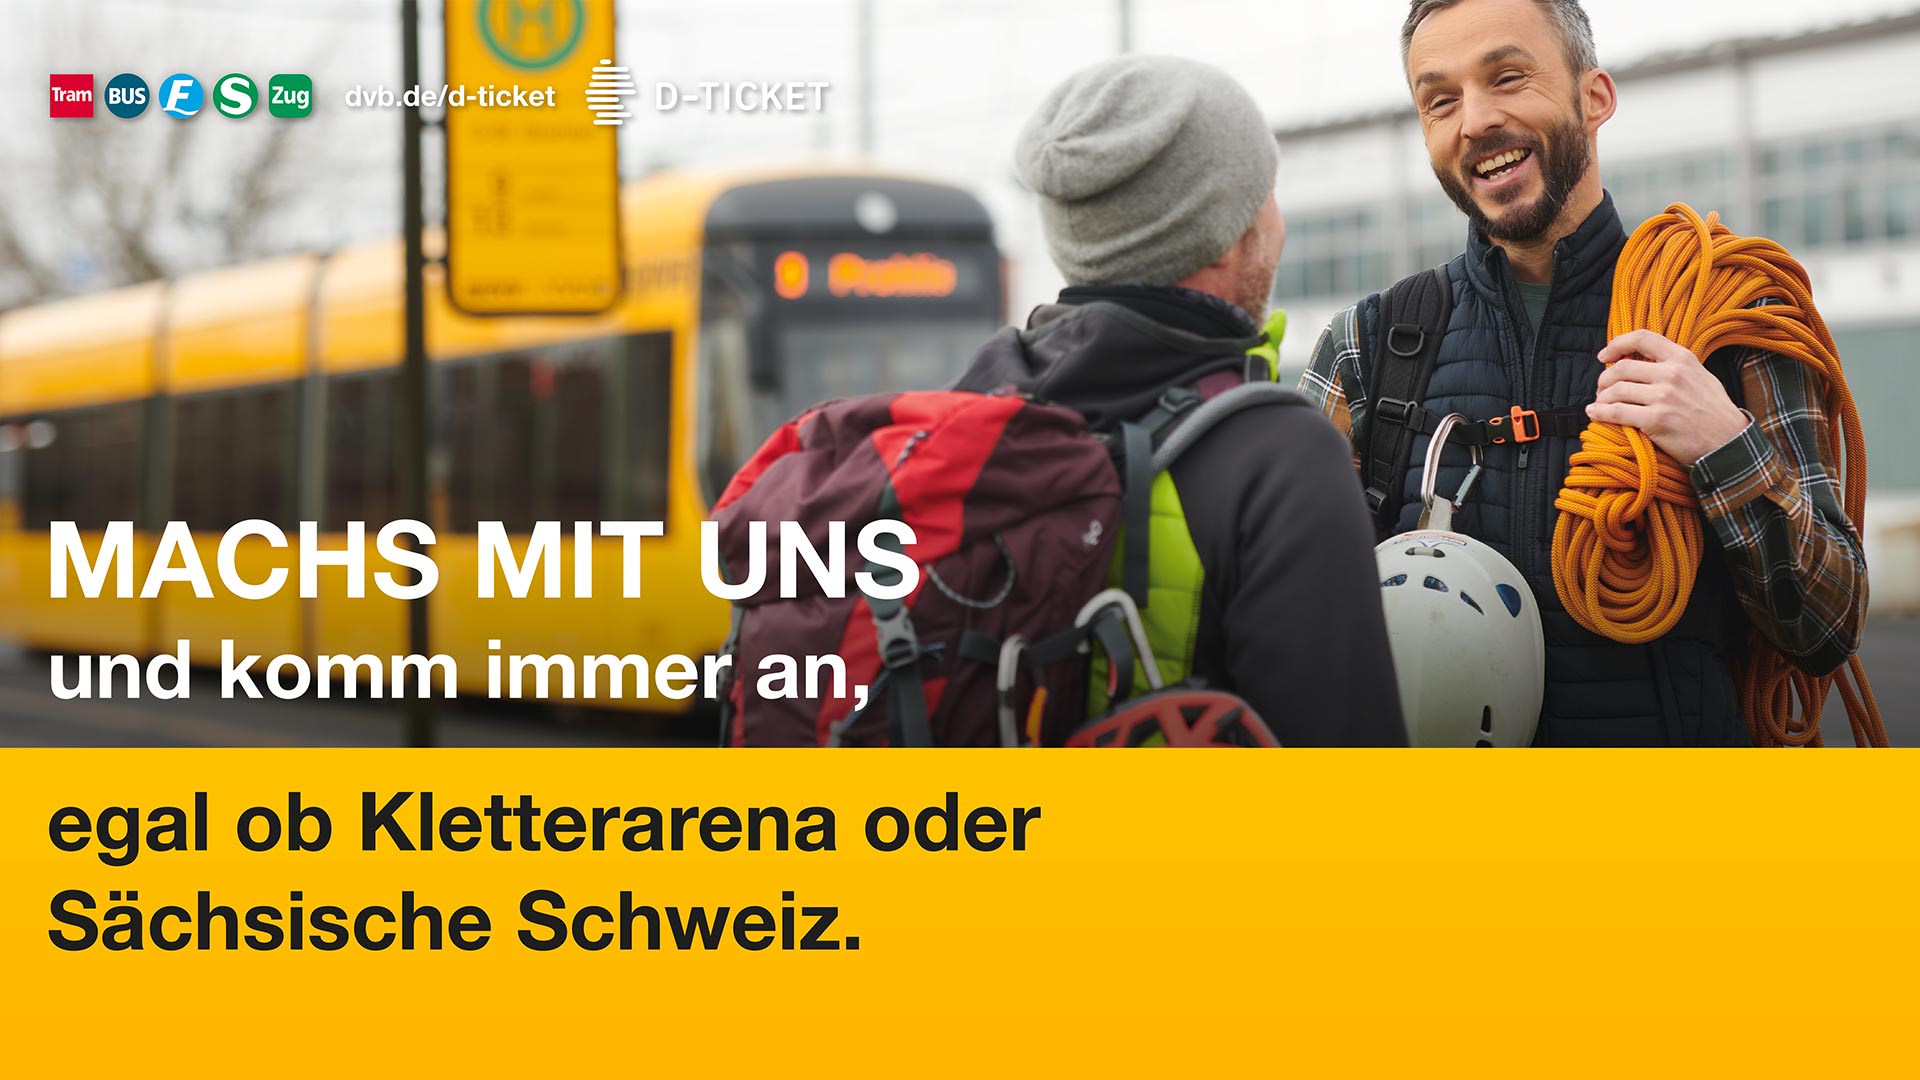 Situationsbilder für die Dresdner Verkehrsbetriebe (DVB) in Zusammenarbeit mit der Werbeagentur Narciss & Taurus und dem Dresdner Fotografen Jürgen Jeibmann